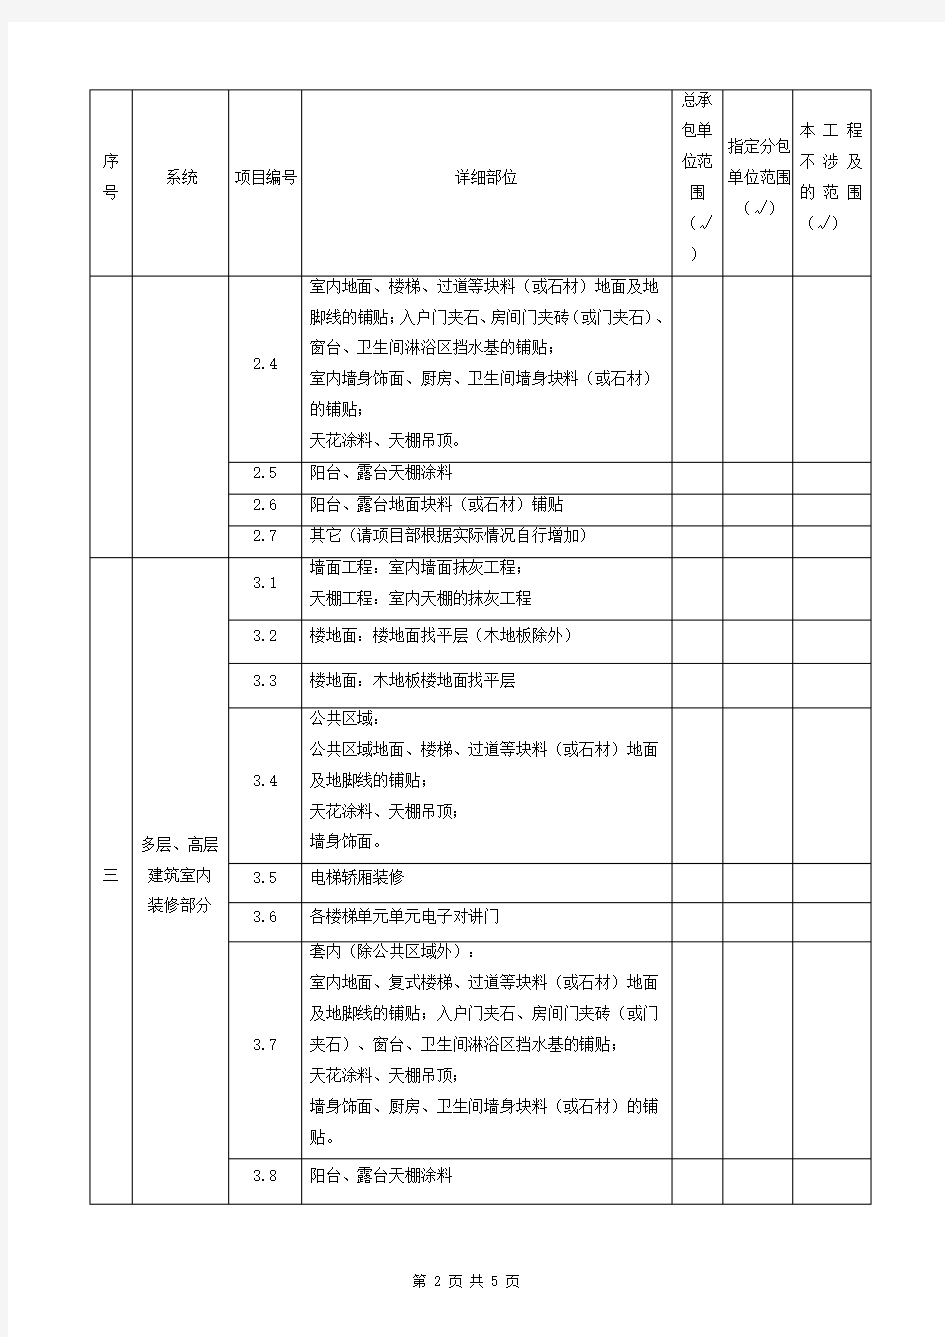 碧桂园精装修总包管理指引施工界面划分表